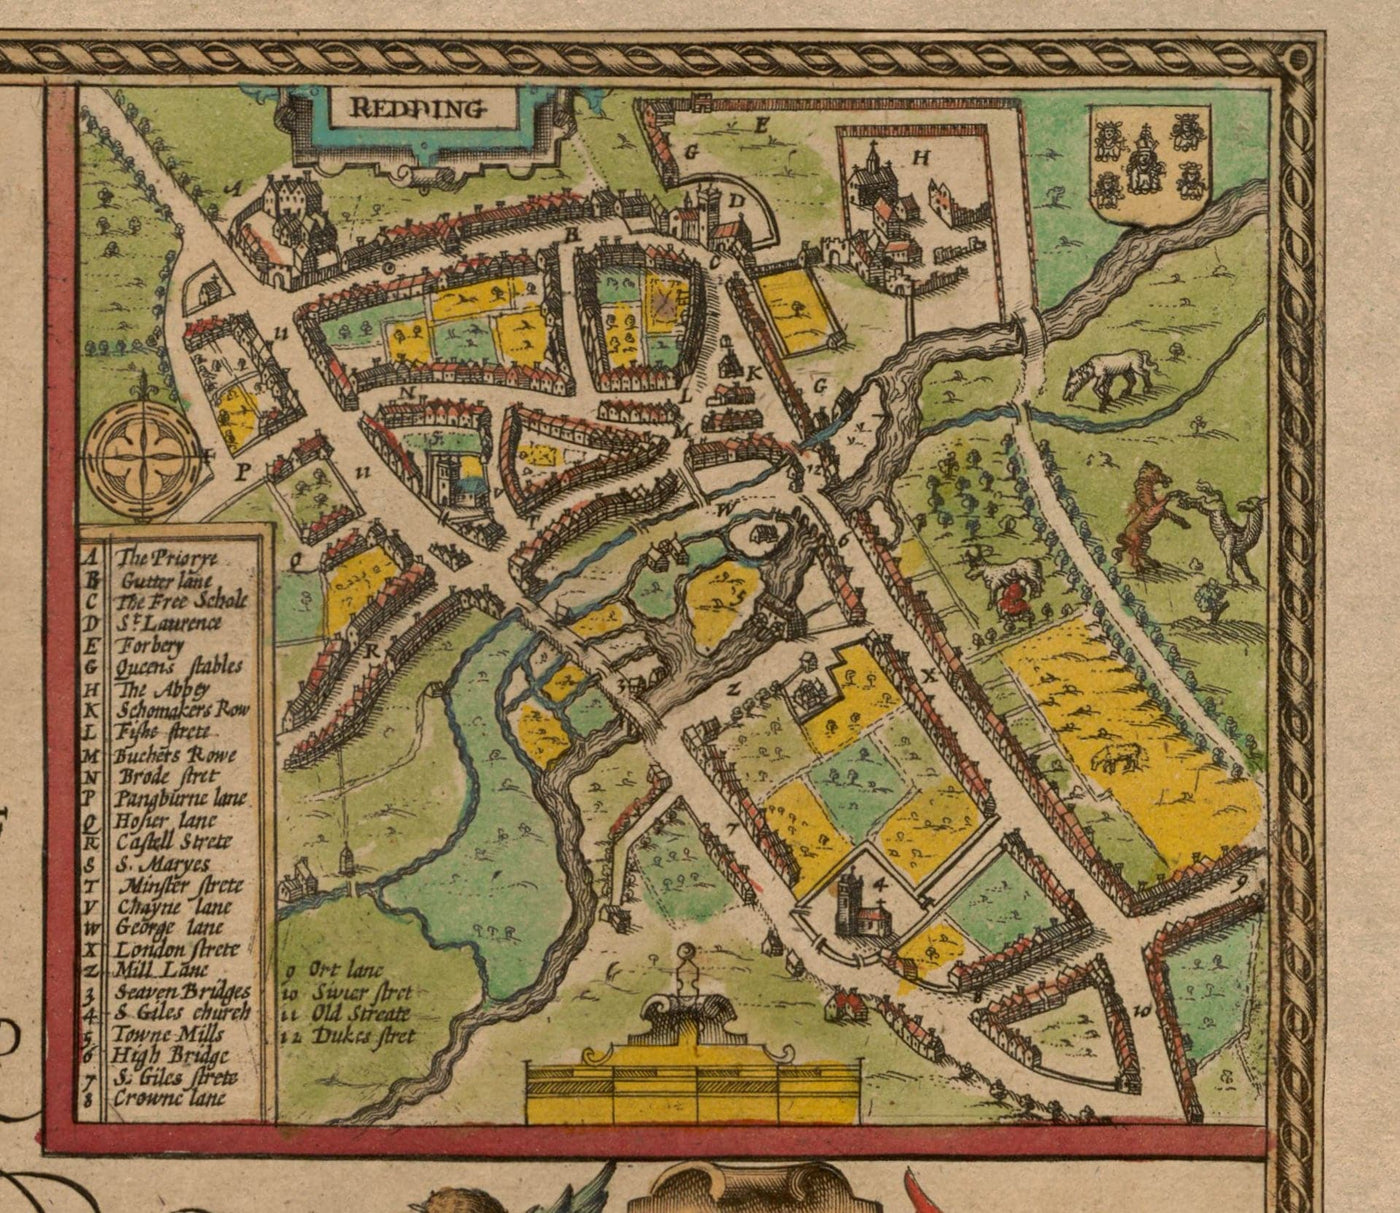 Alte Karte von Buckinghamshire im Jahr 1611 von John Speed - High Wycombe, Amersham, Buckingham, Milton Keynes, Aylesbury, Newport Pagnell